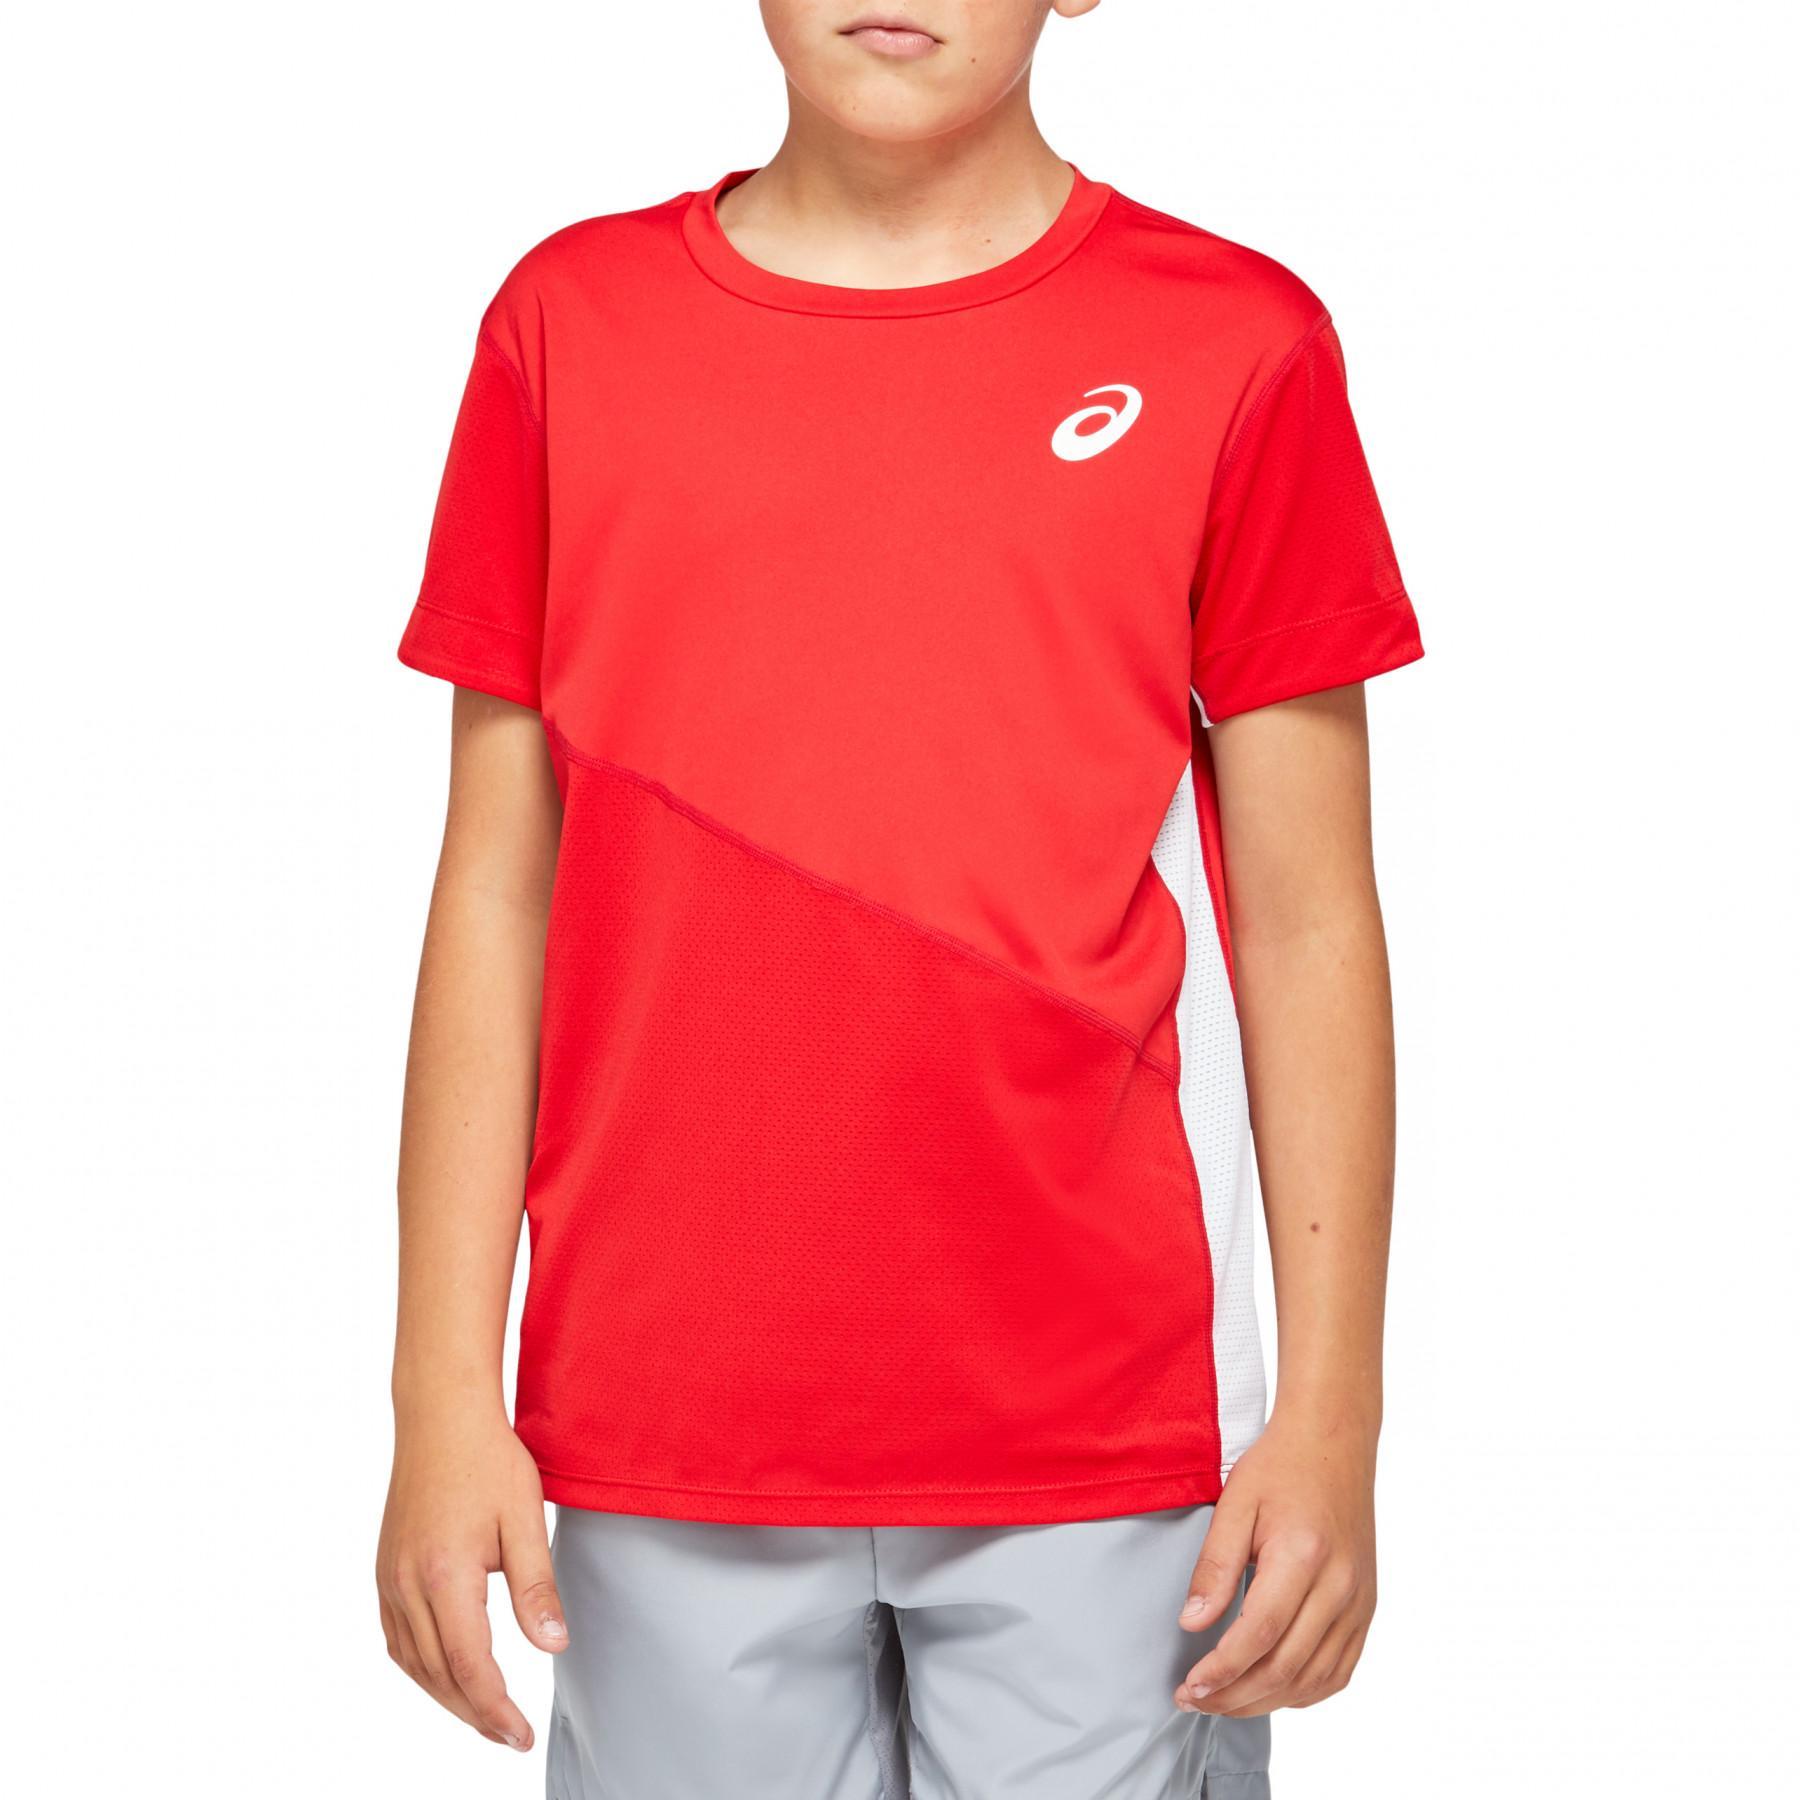 Child's T-shirt Asics Tennis Club